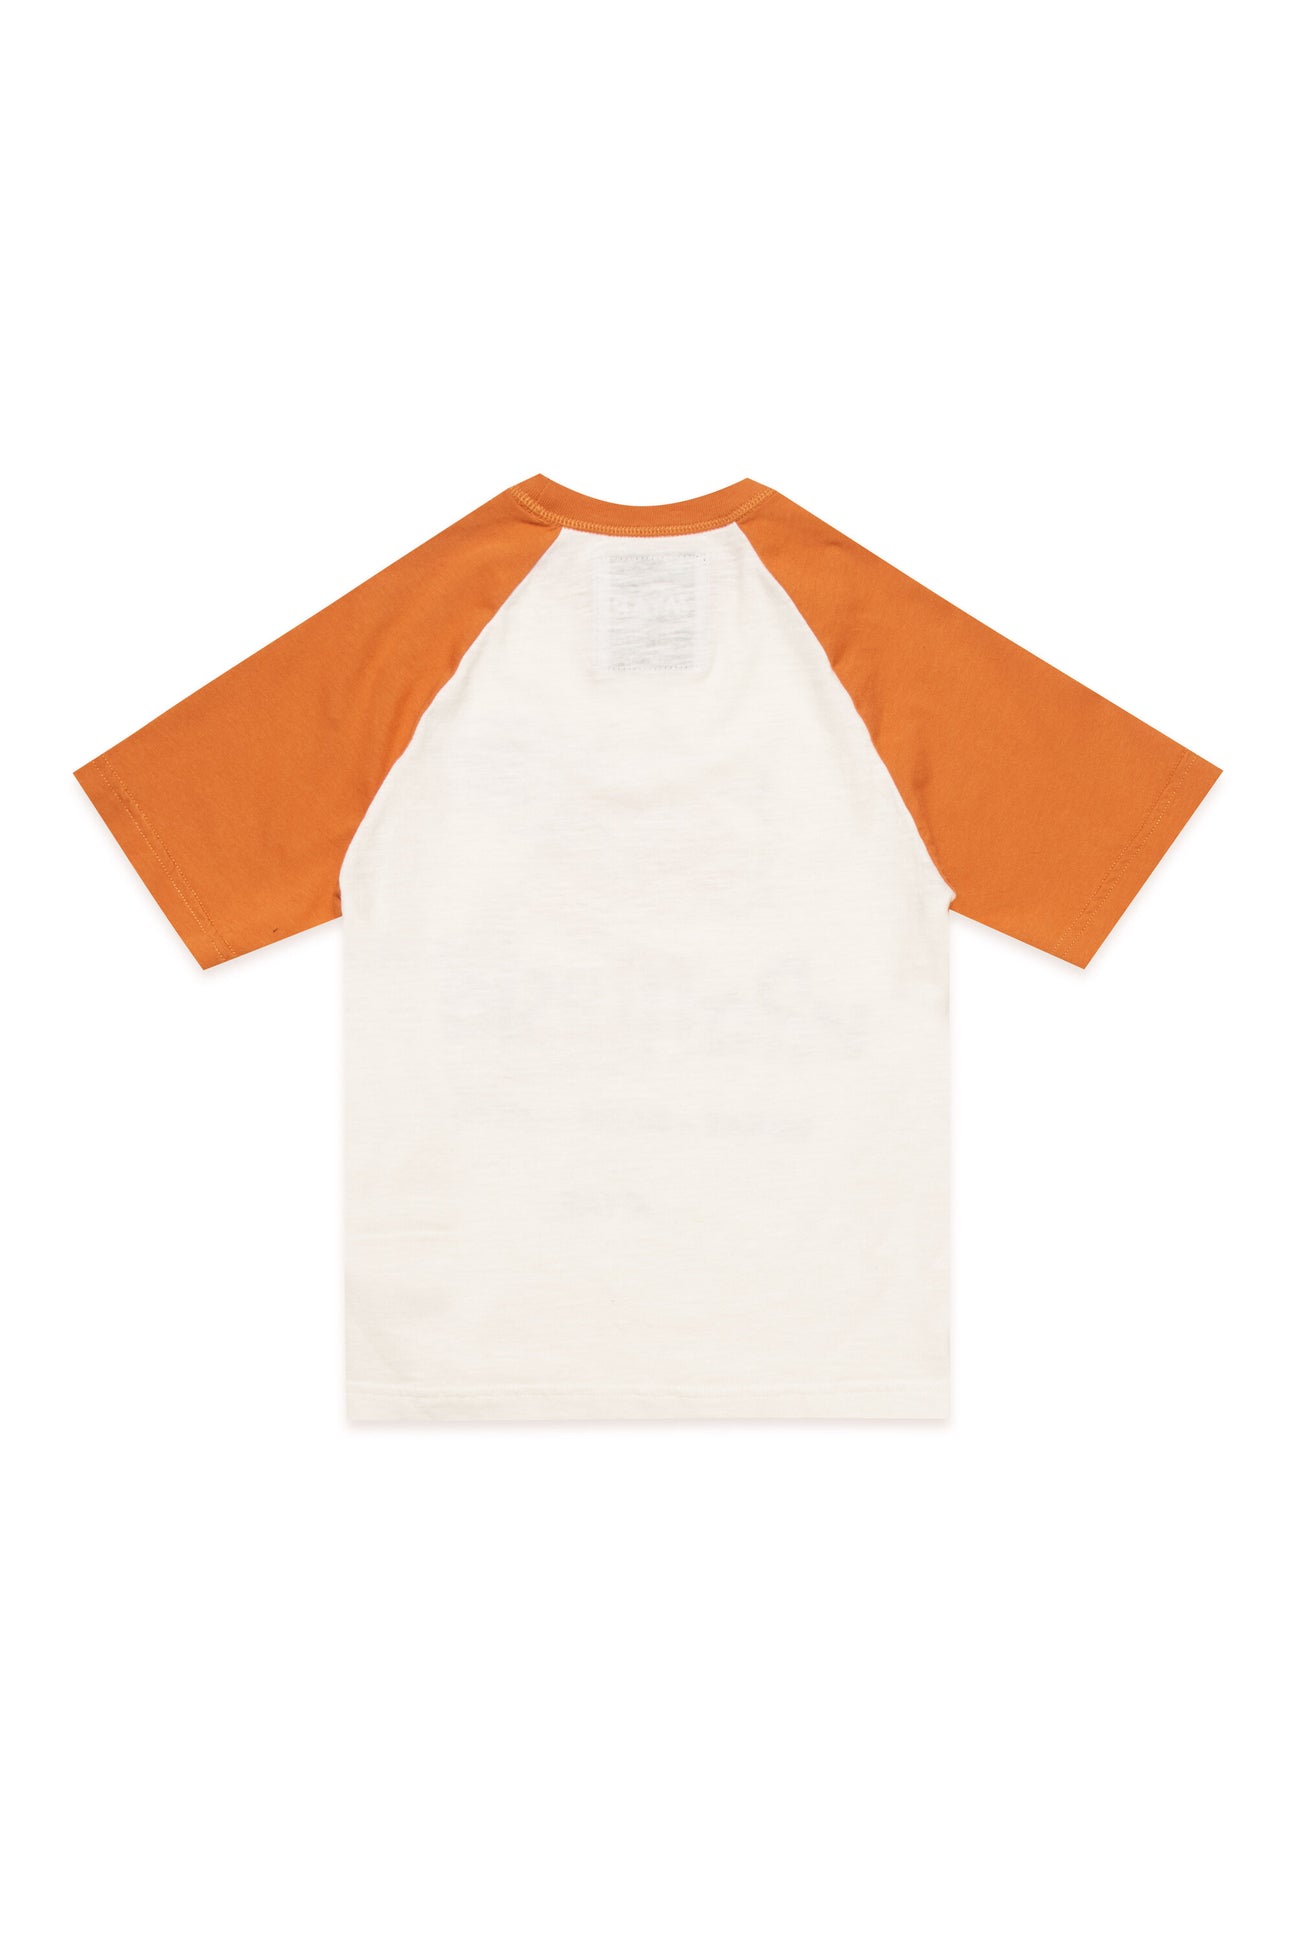 T-shirt girocollo in tessuto deadstock bicolor bianco e arancione con stampa digitale Rafflesia T-shirt girocollo in tessuto deadstock bicolor bianco e arancione con stampa digitale Rafflesia